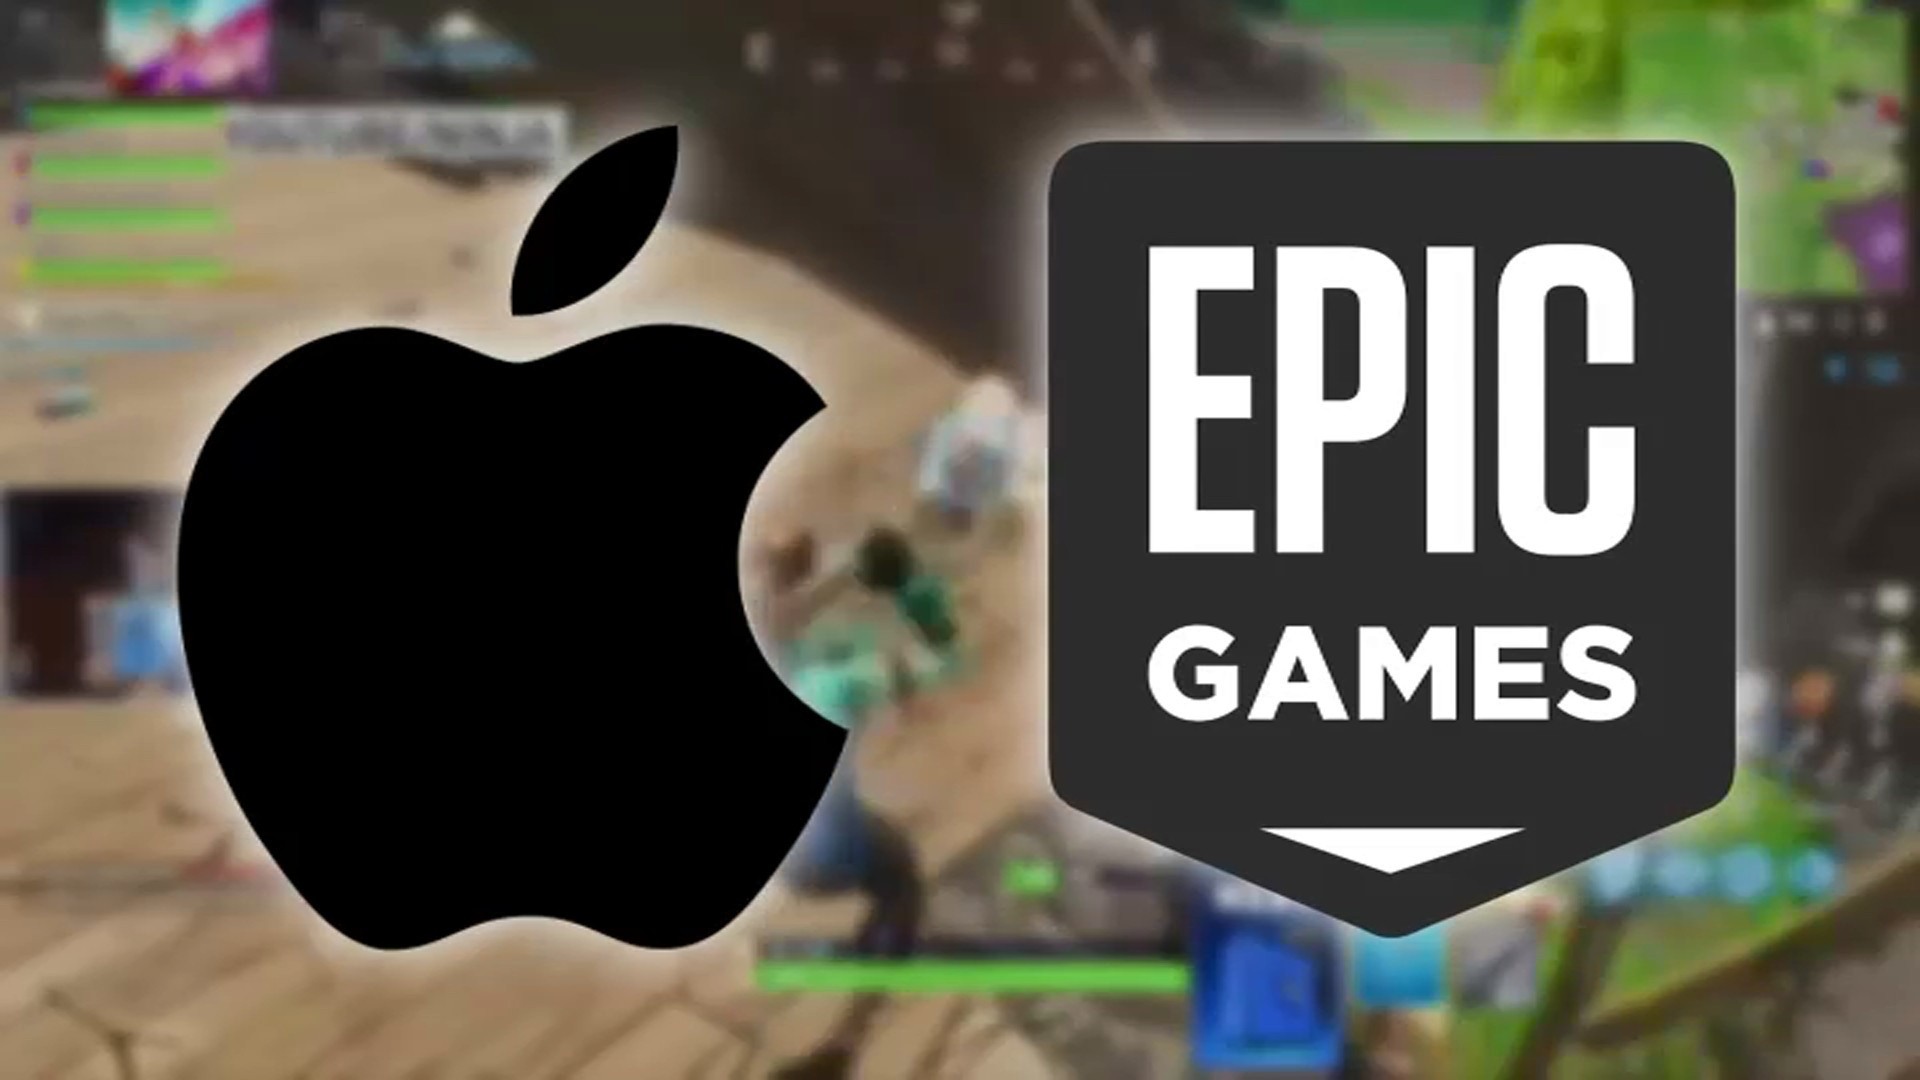 apple vs epic reddit